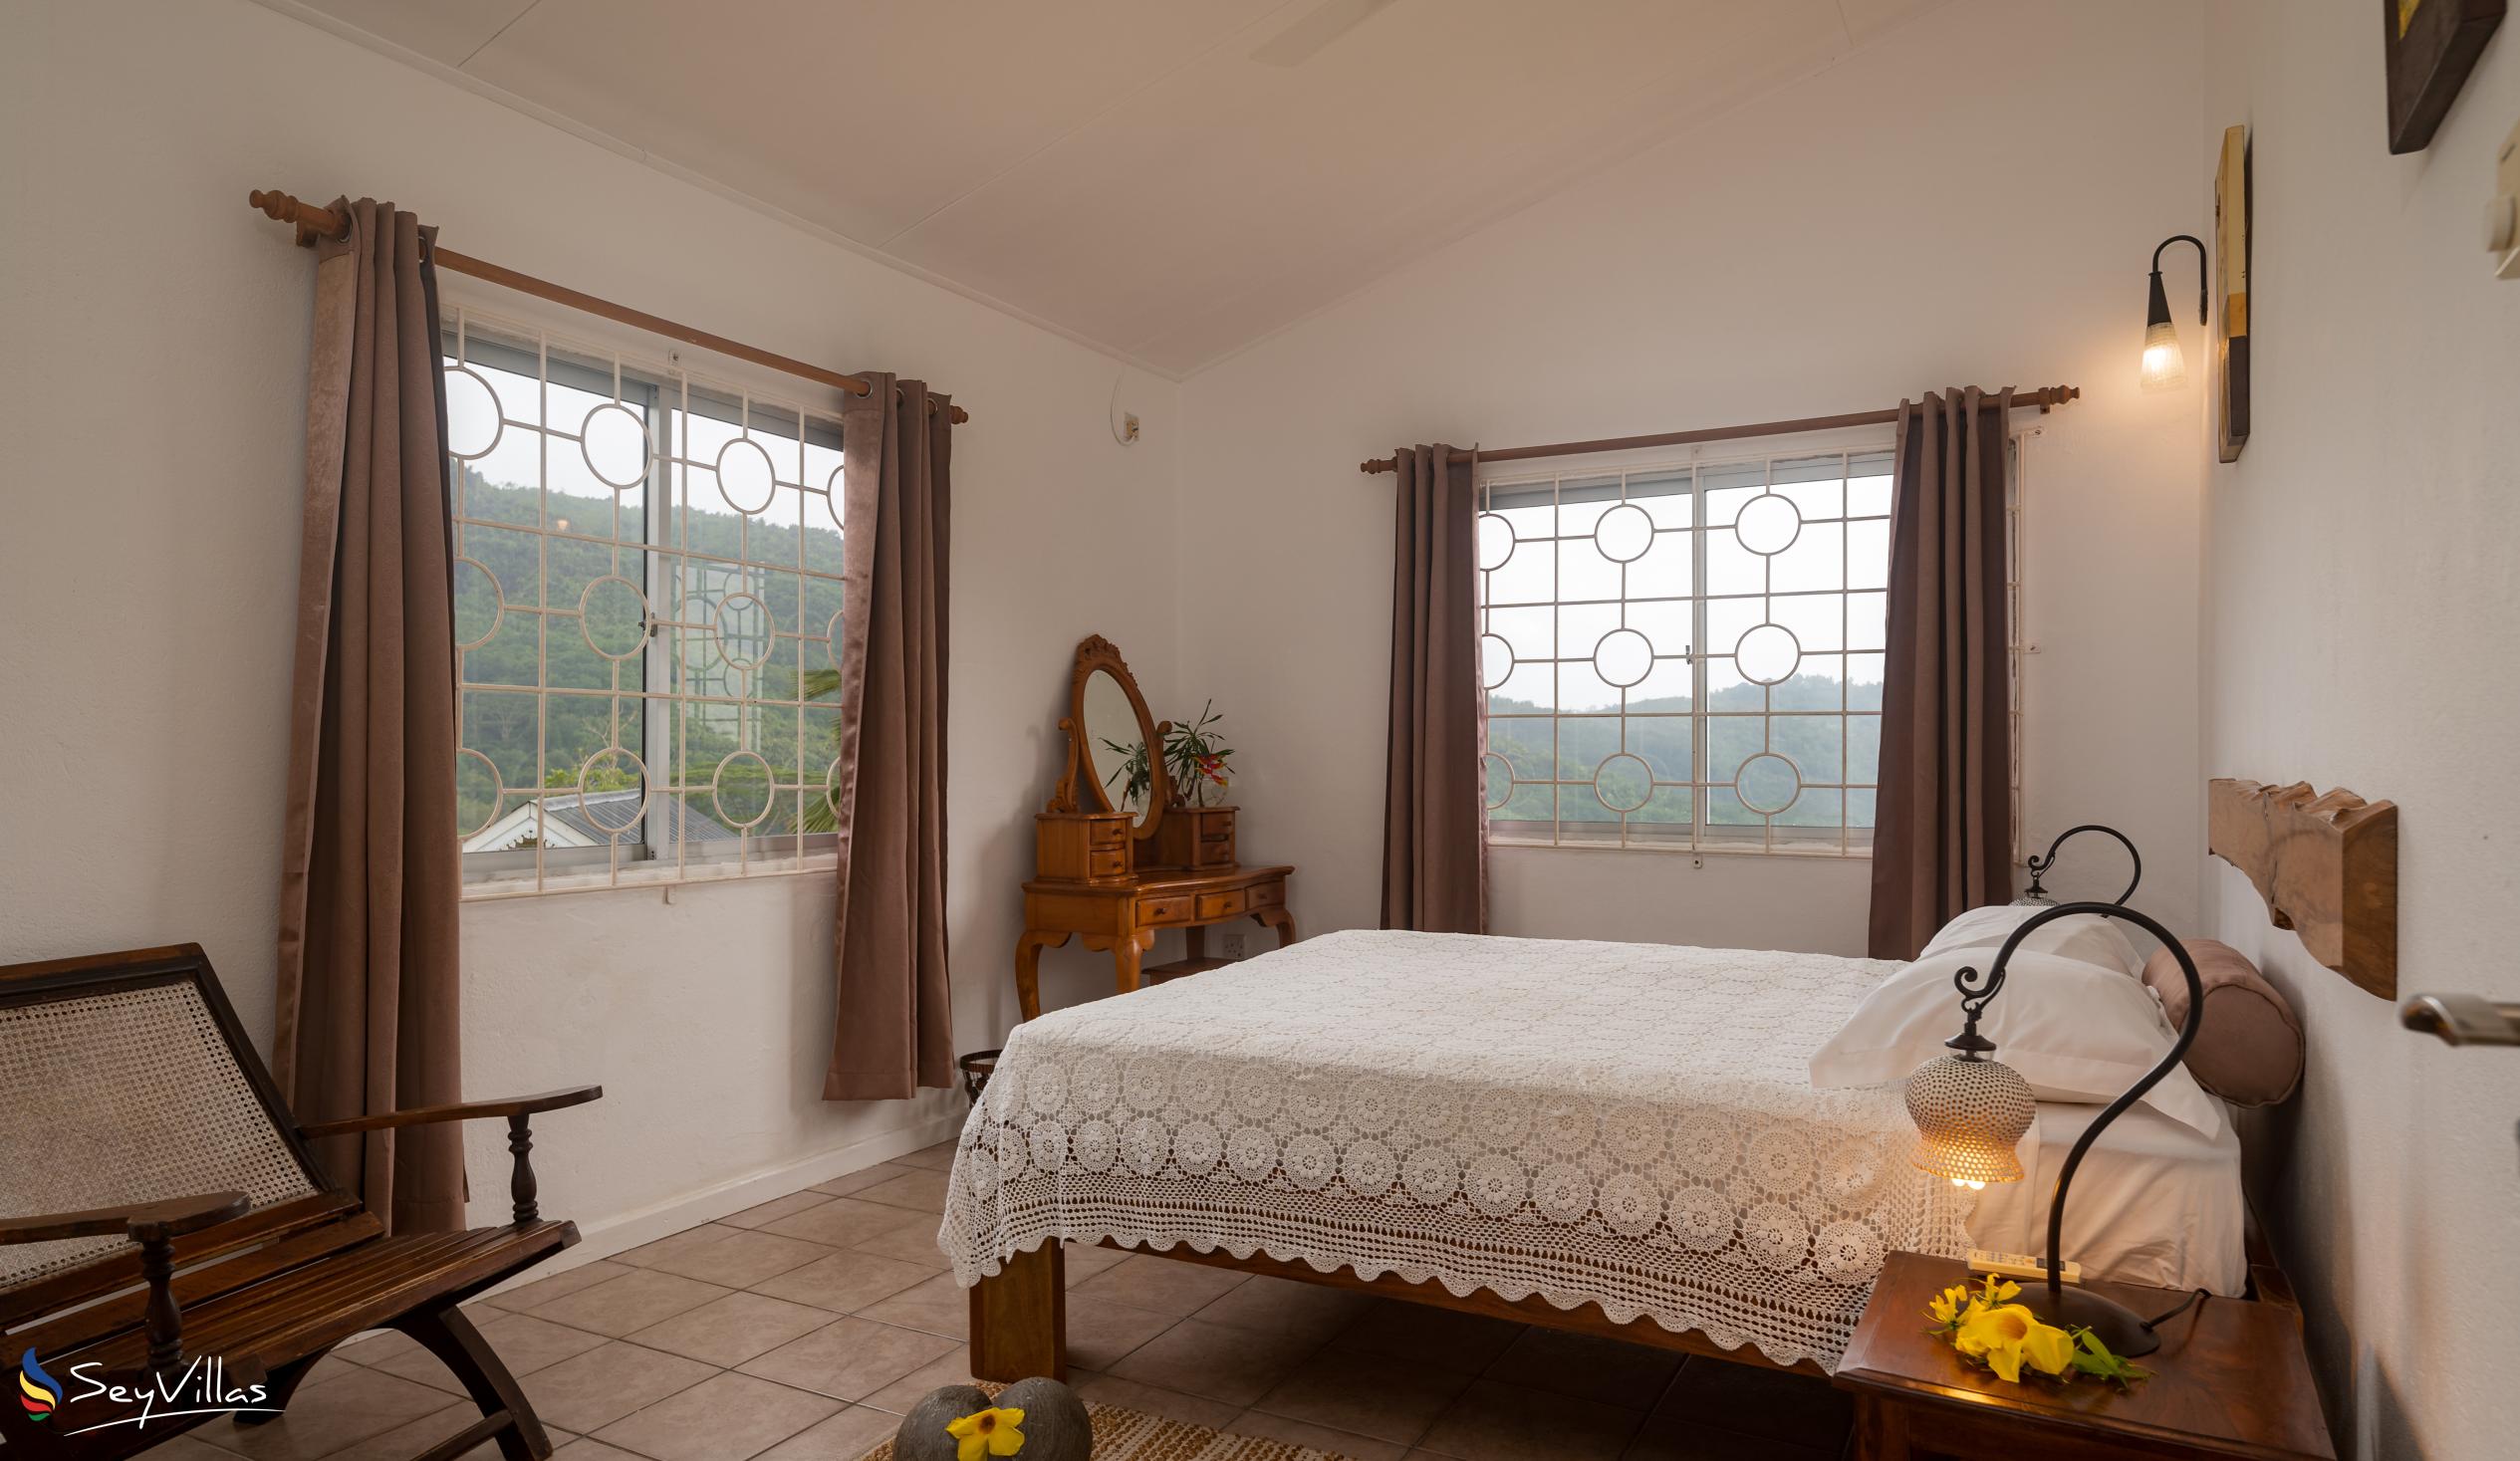 Foto 69: Residence Monte Cristo - Appartamento con 2 camere - Mahé (Seychelles)